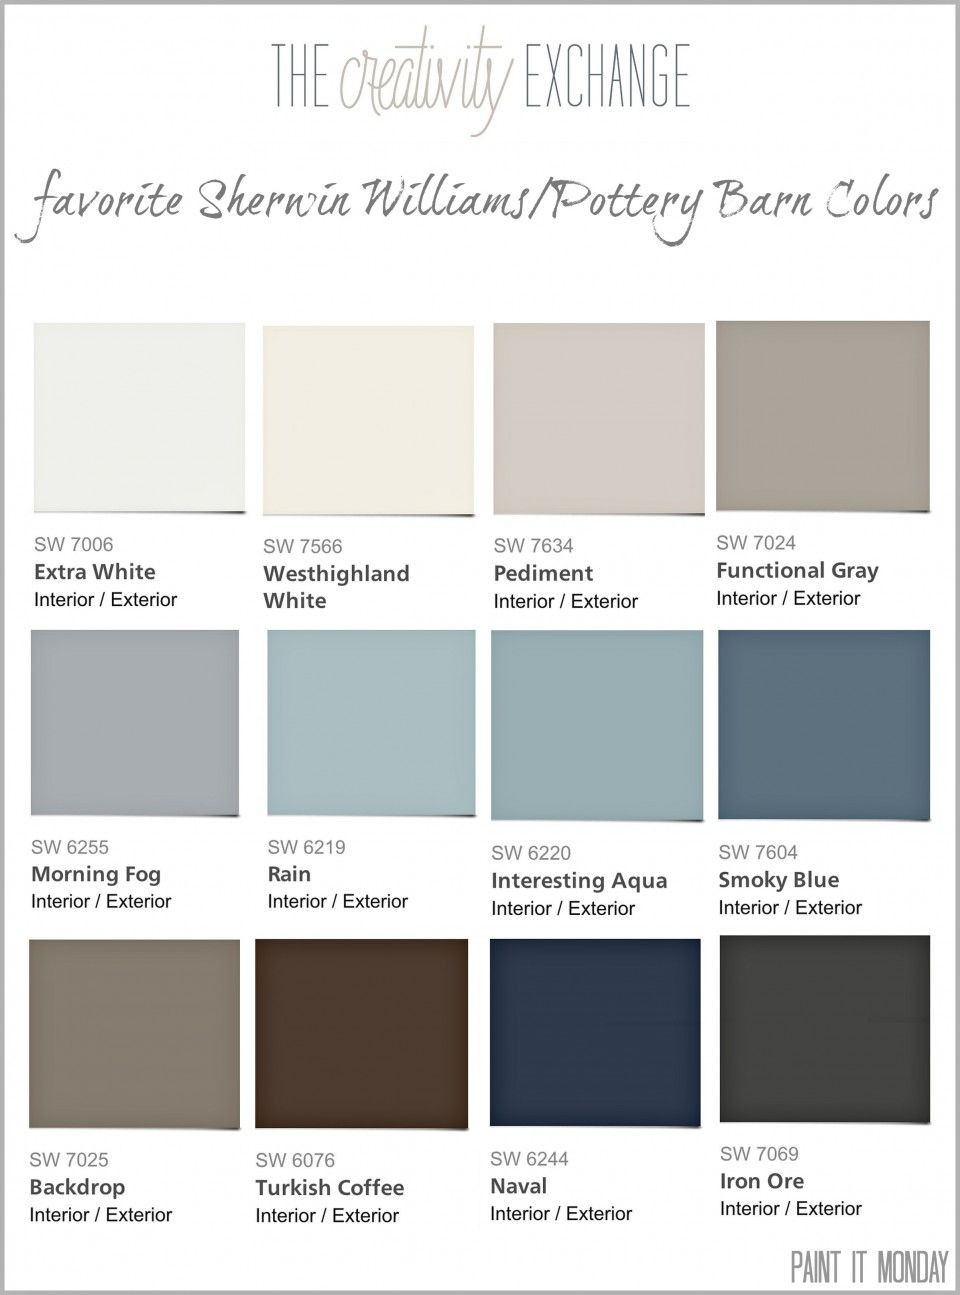 Best ideas about Home Depot Paint Colors
. Save or Pin Bathroom Paint Colors Home Depot and bathroom paint colors Now.